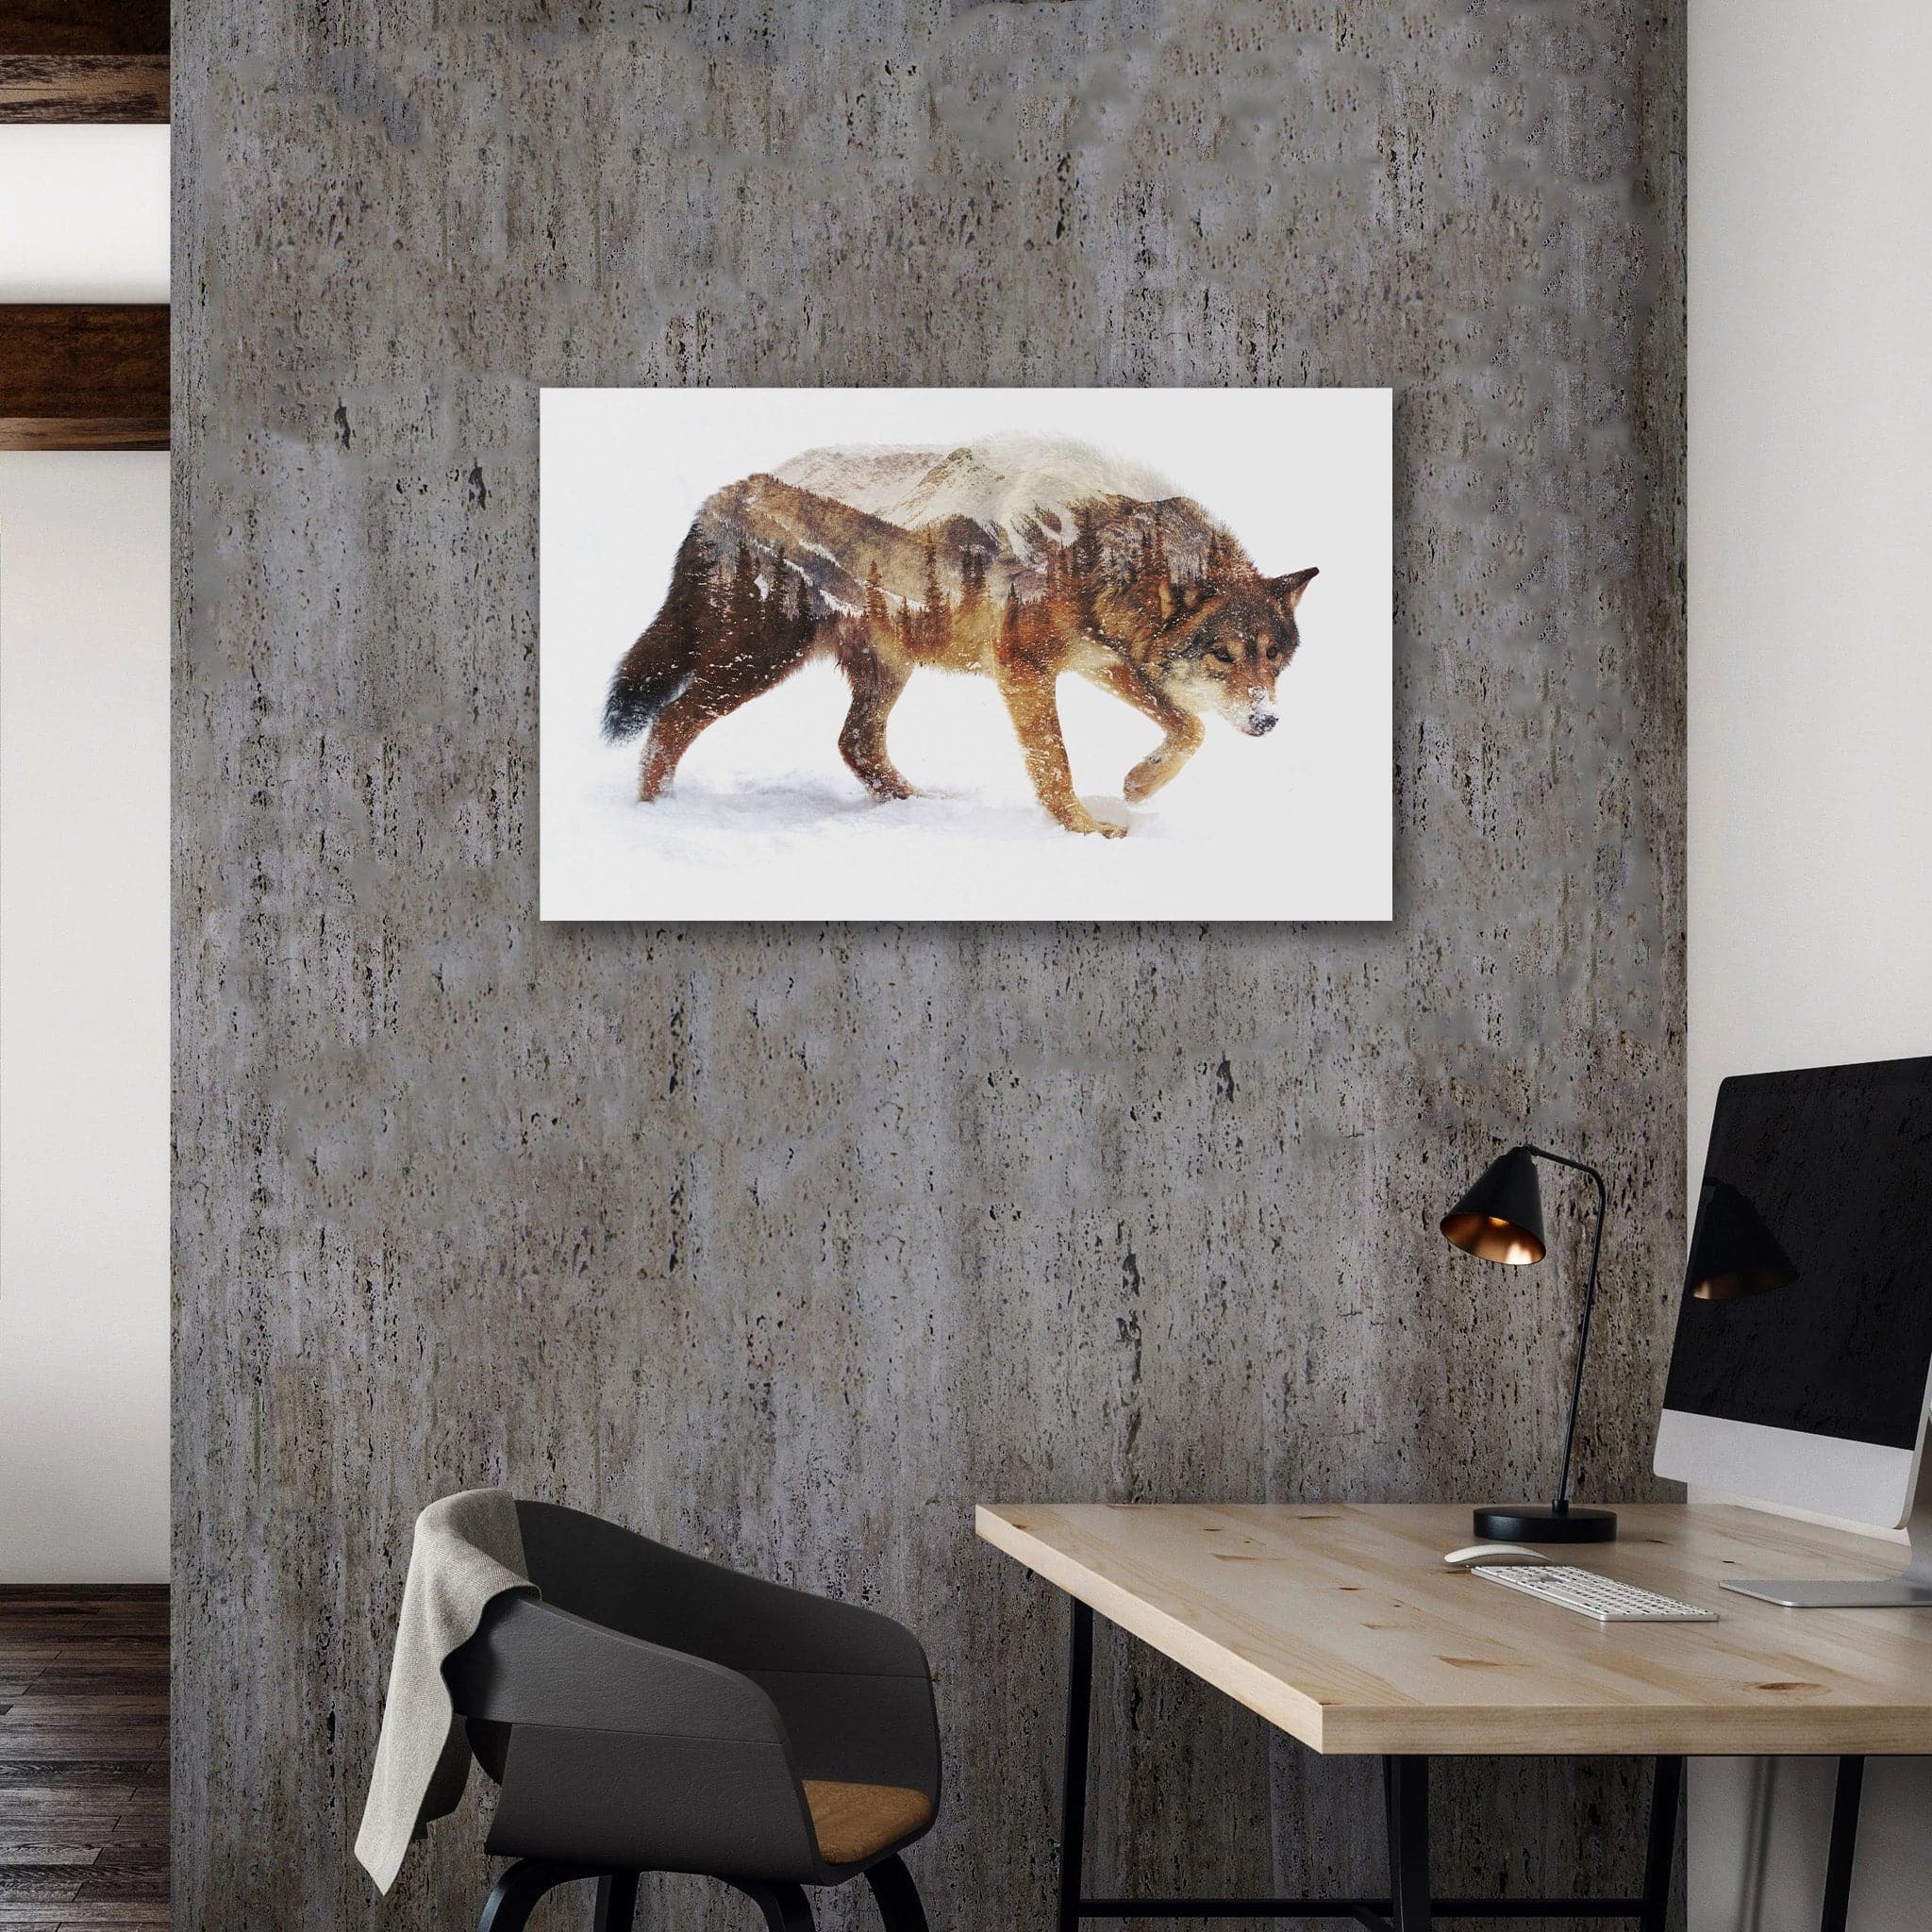 Framed 1 Panel - Wolf